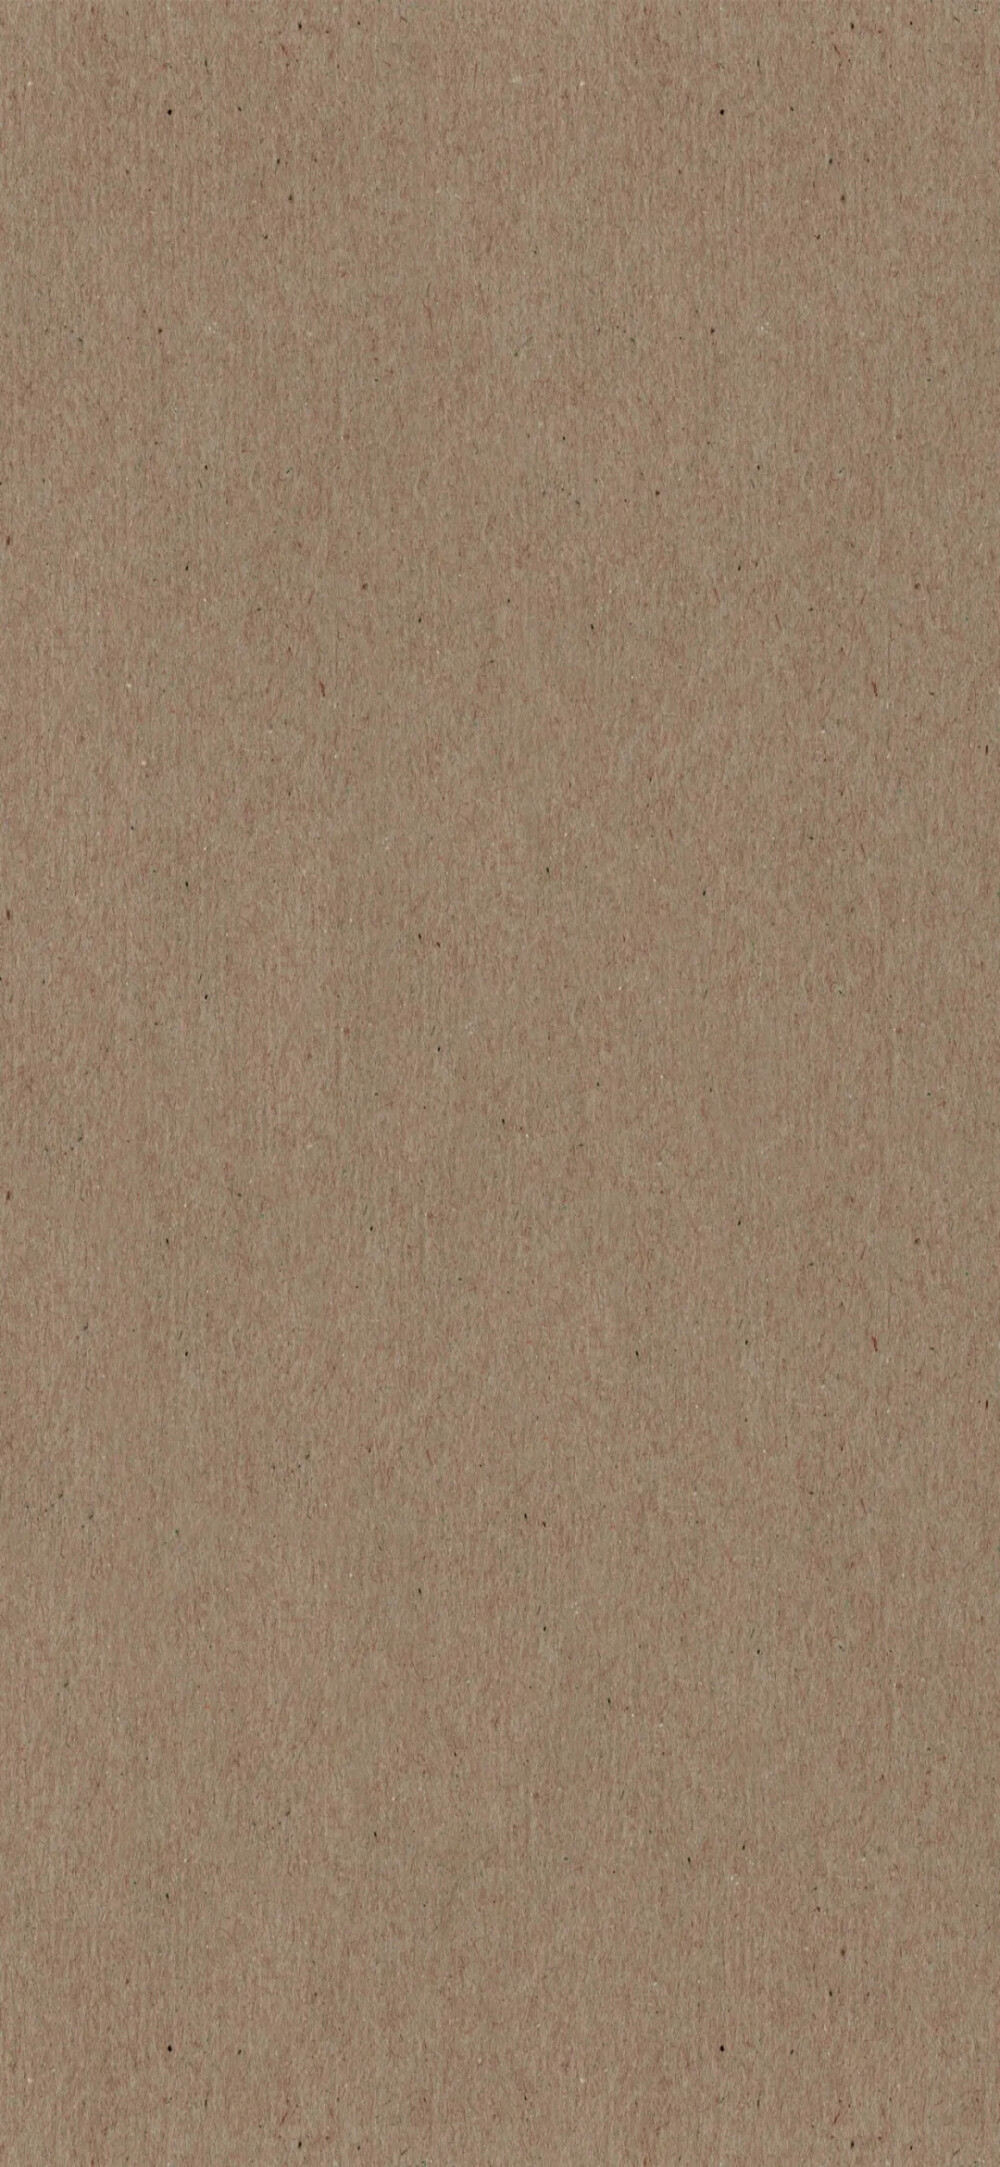 淡棕色纯色背景图片